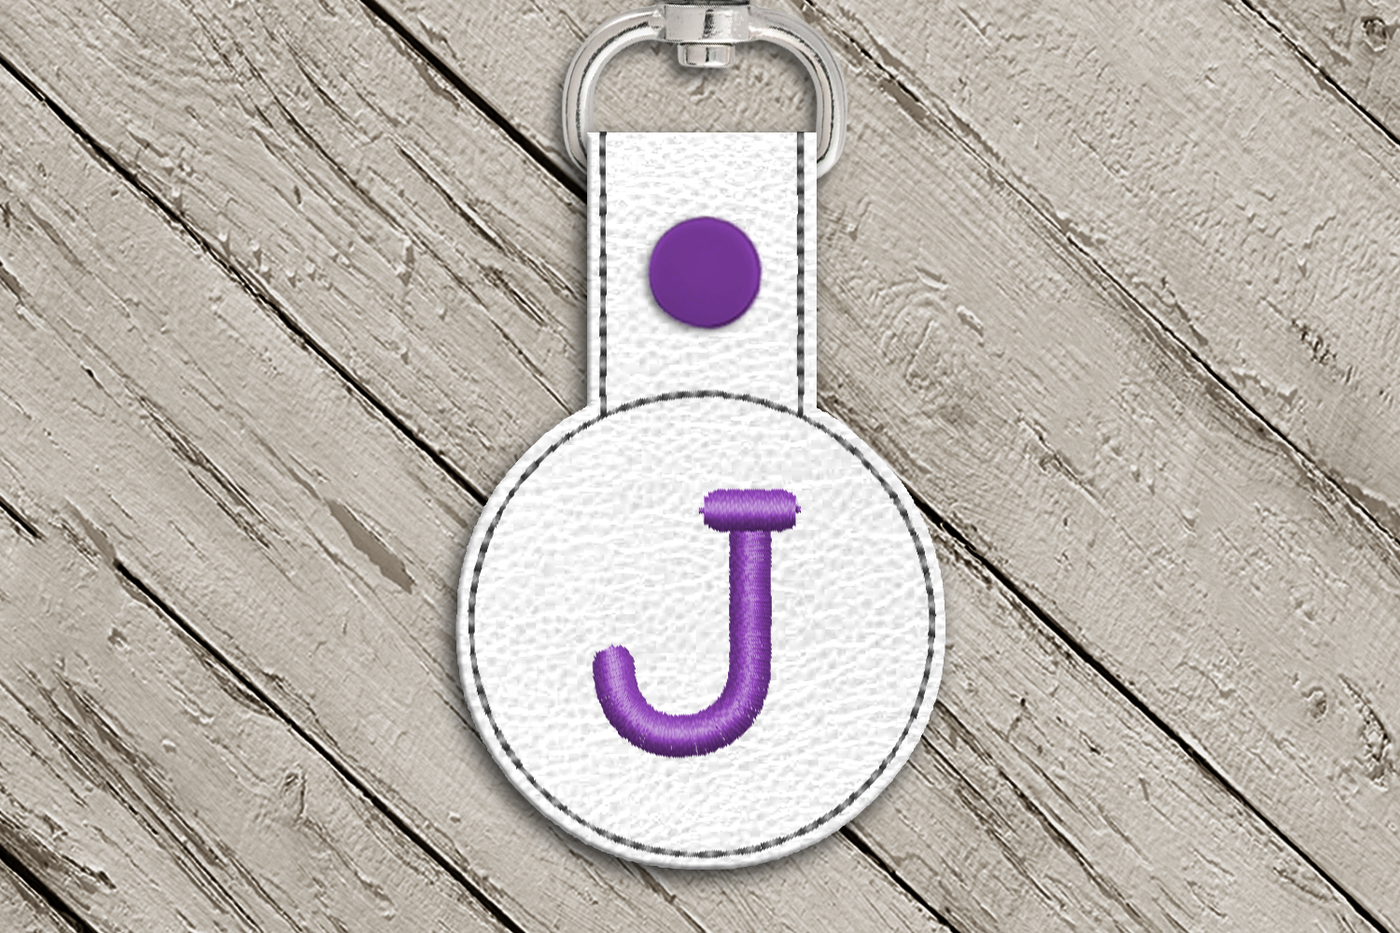 Letter J in the hoop key fob design